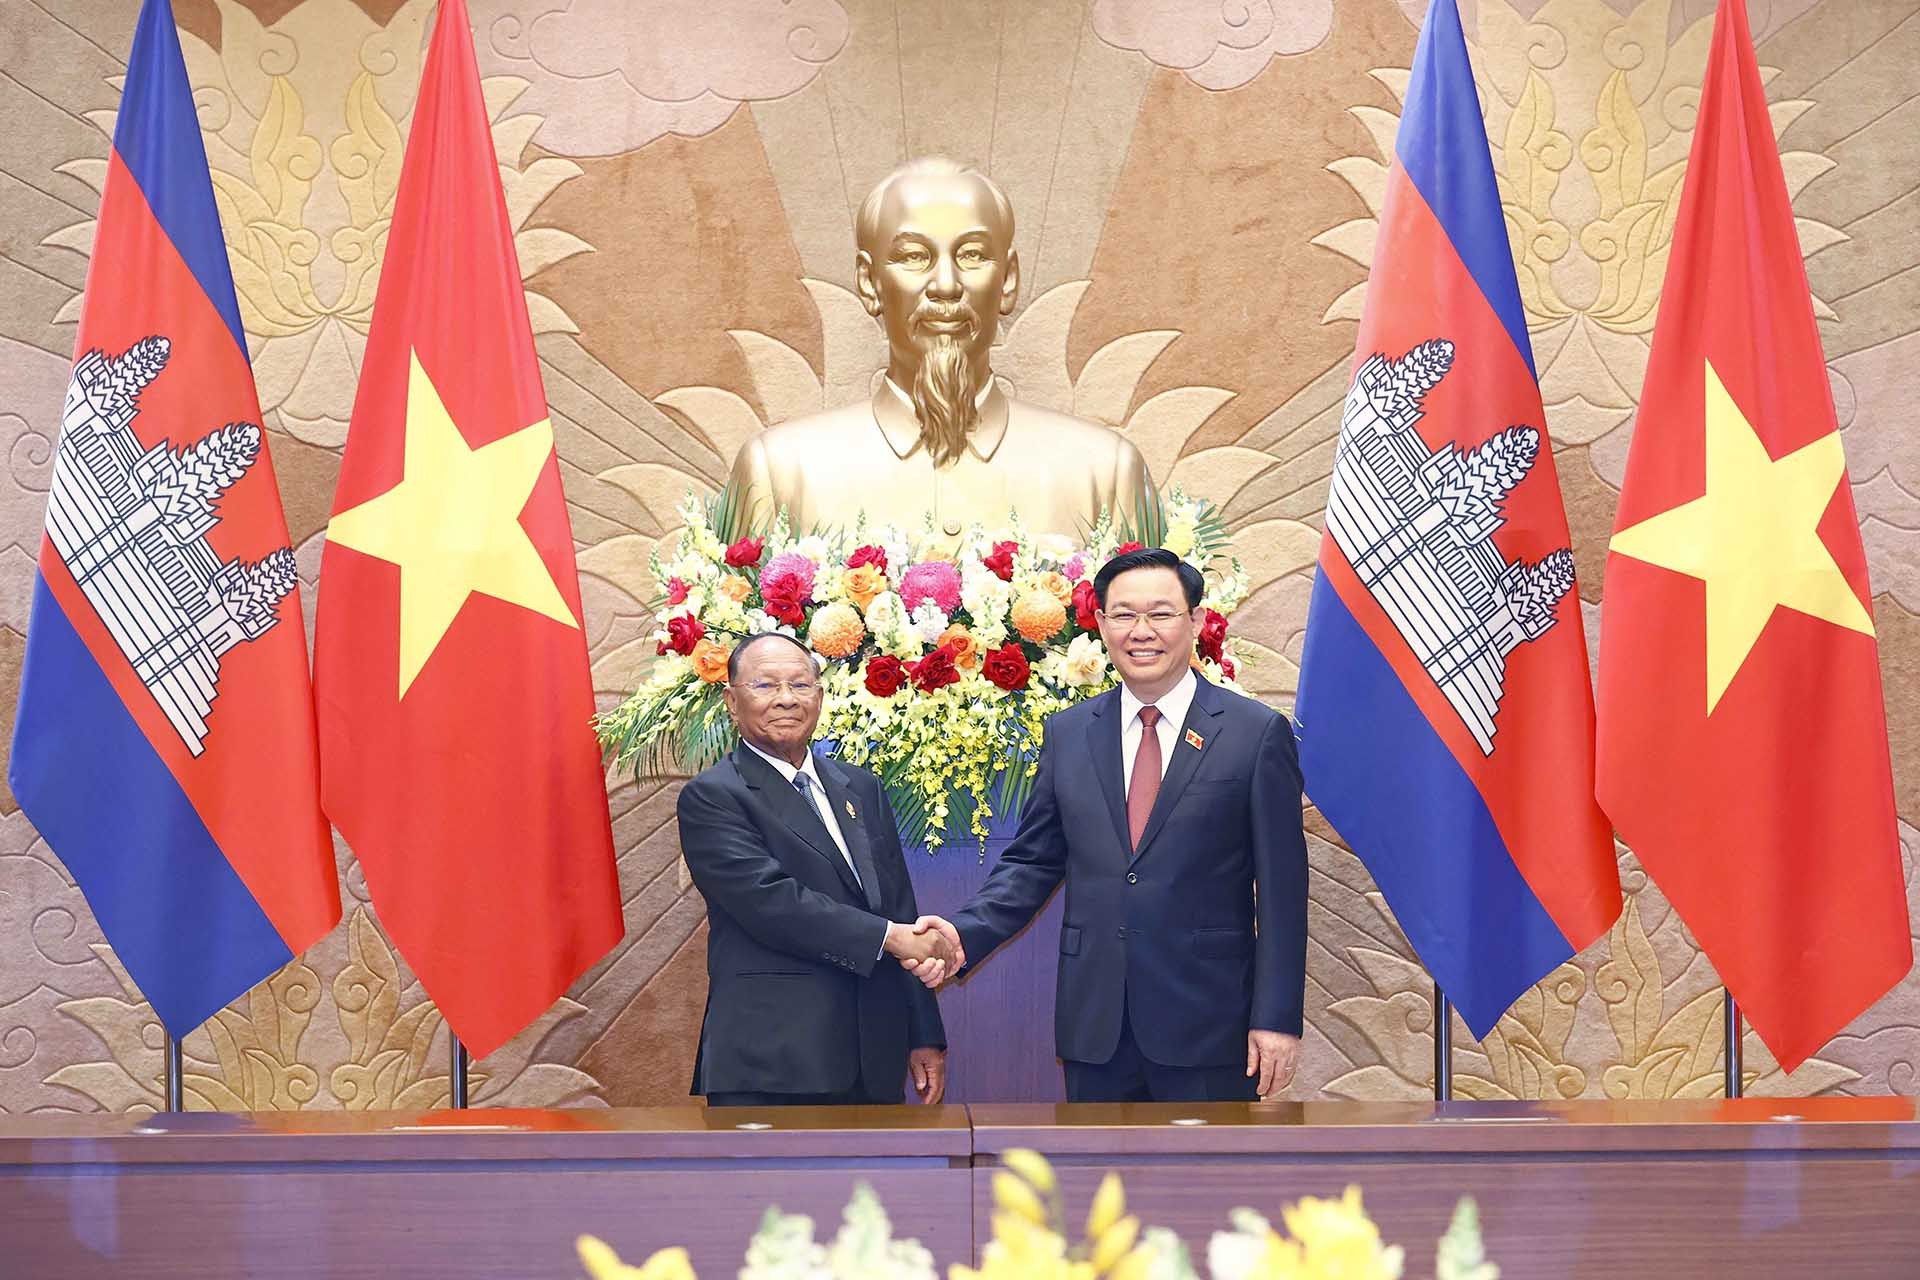 Chủ tịch Quốc hội Vương Đình Huệ và Chủ tịch Quốc hội Vương quốc Campuchia Samdech Heng Samrin chụp ảnh chung. (Nguồn: TTXVN)